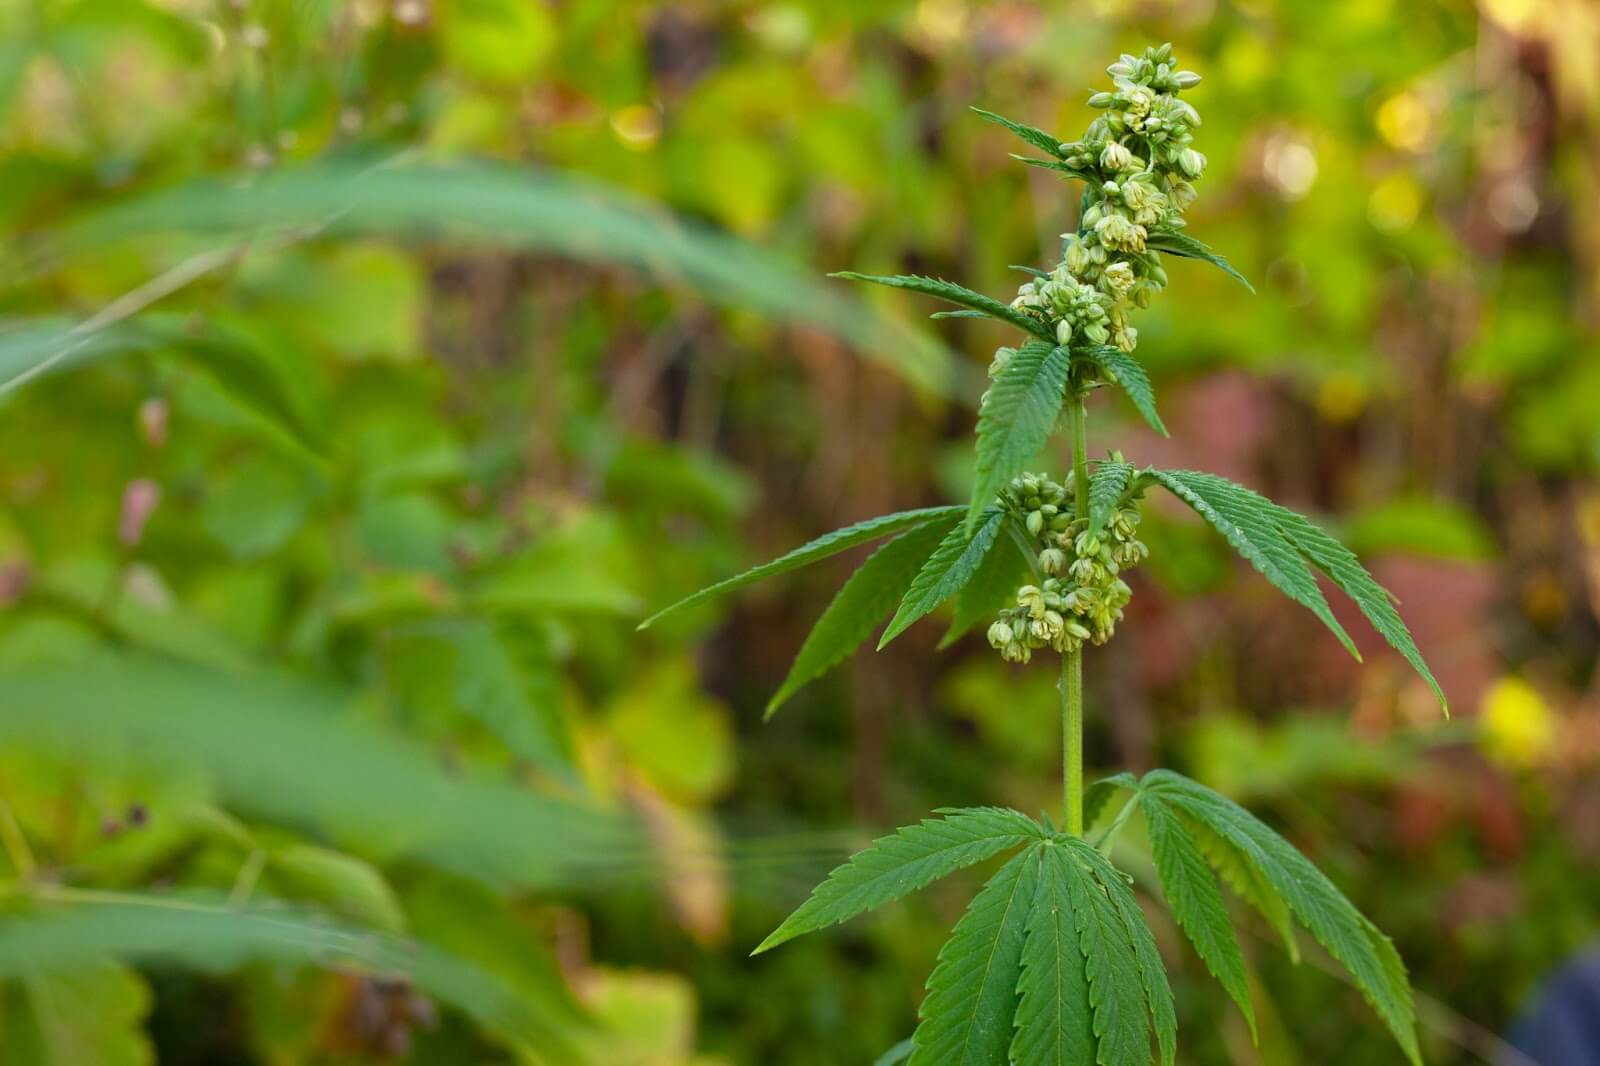 white cannabis buds